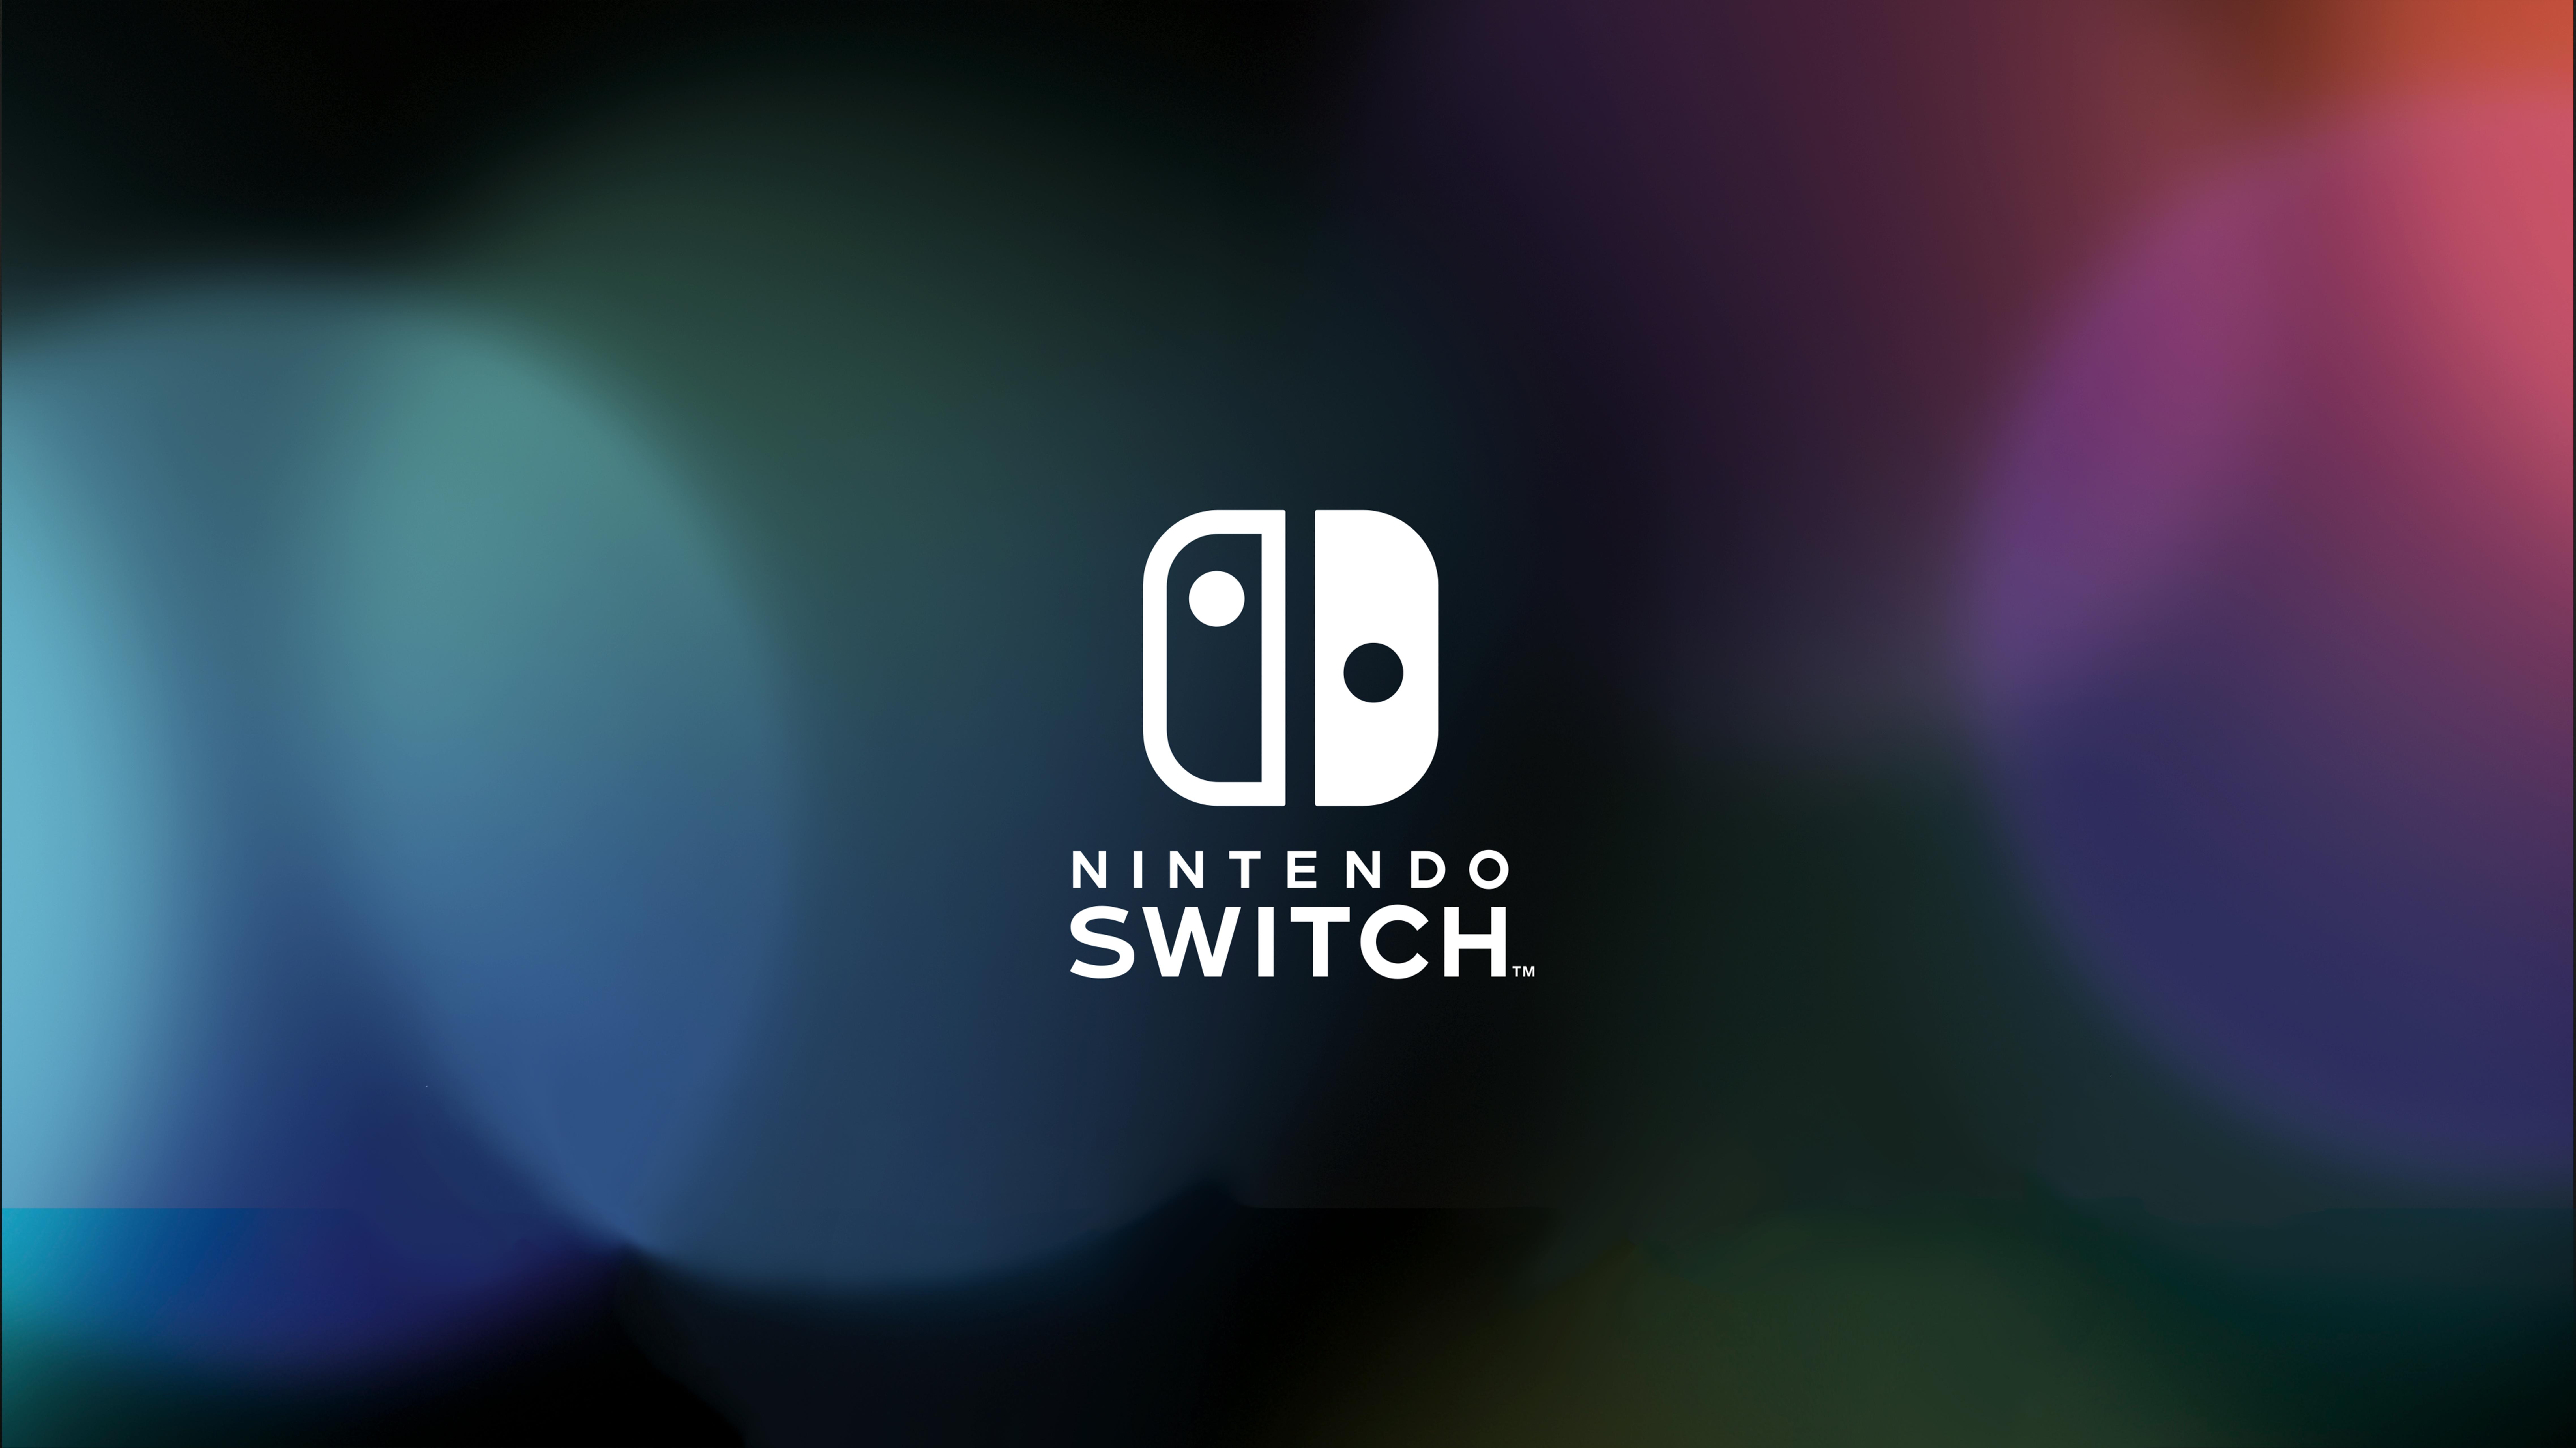 nintendo switch ve mario kart 8 deluxe satış rakamları açıklandı!